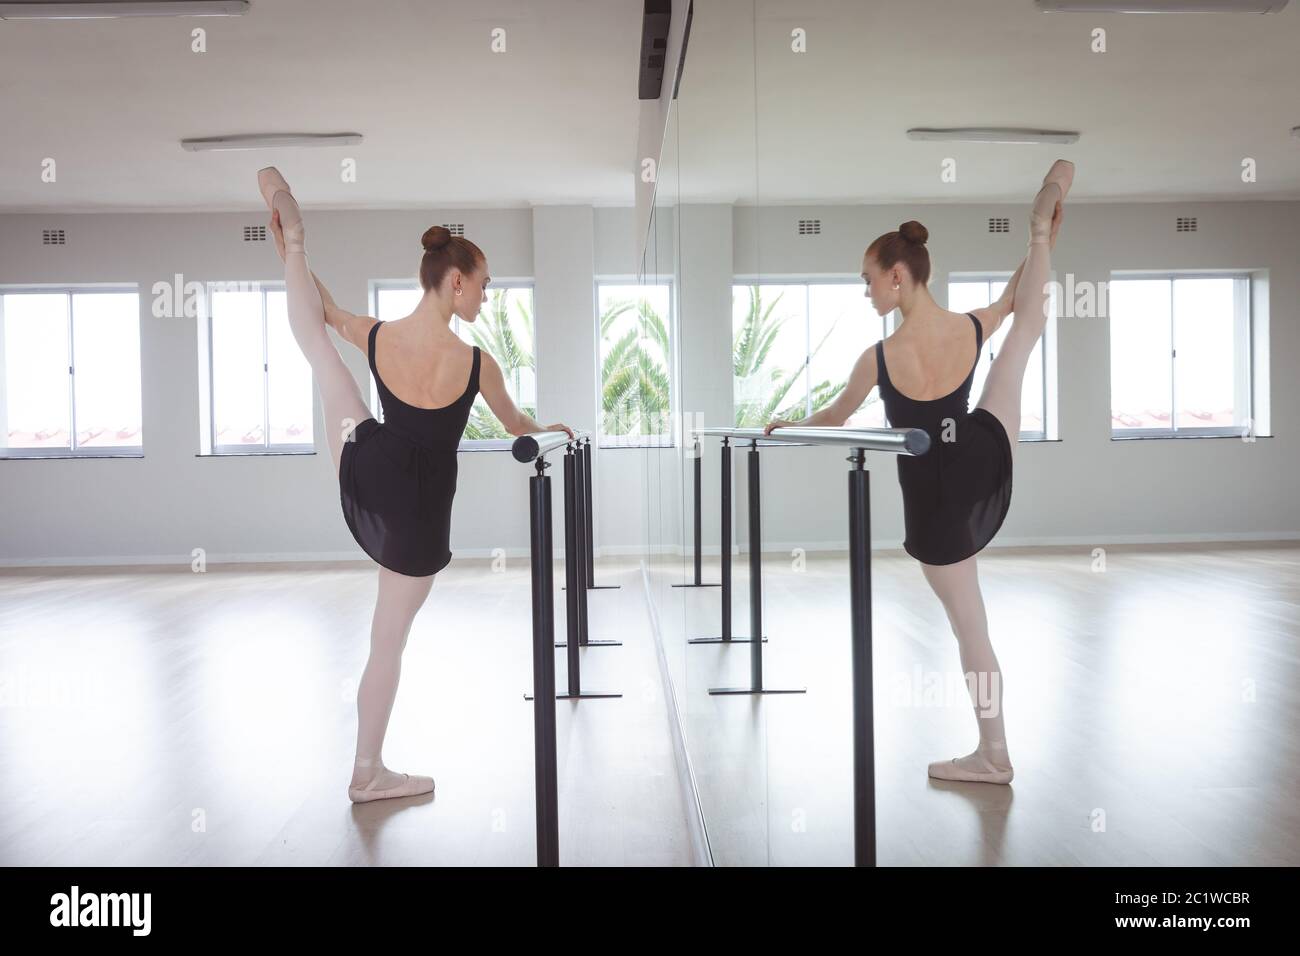 Ballet Barre Workout Stockfotos Und Bilder Kaufen Seite 3 Alamy